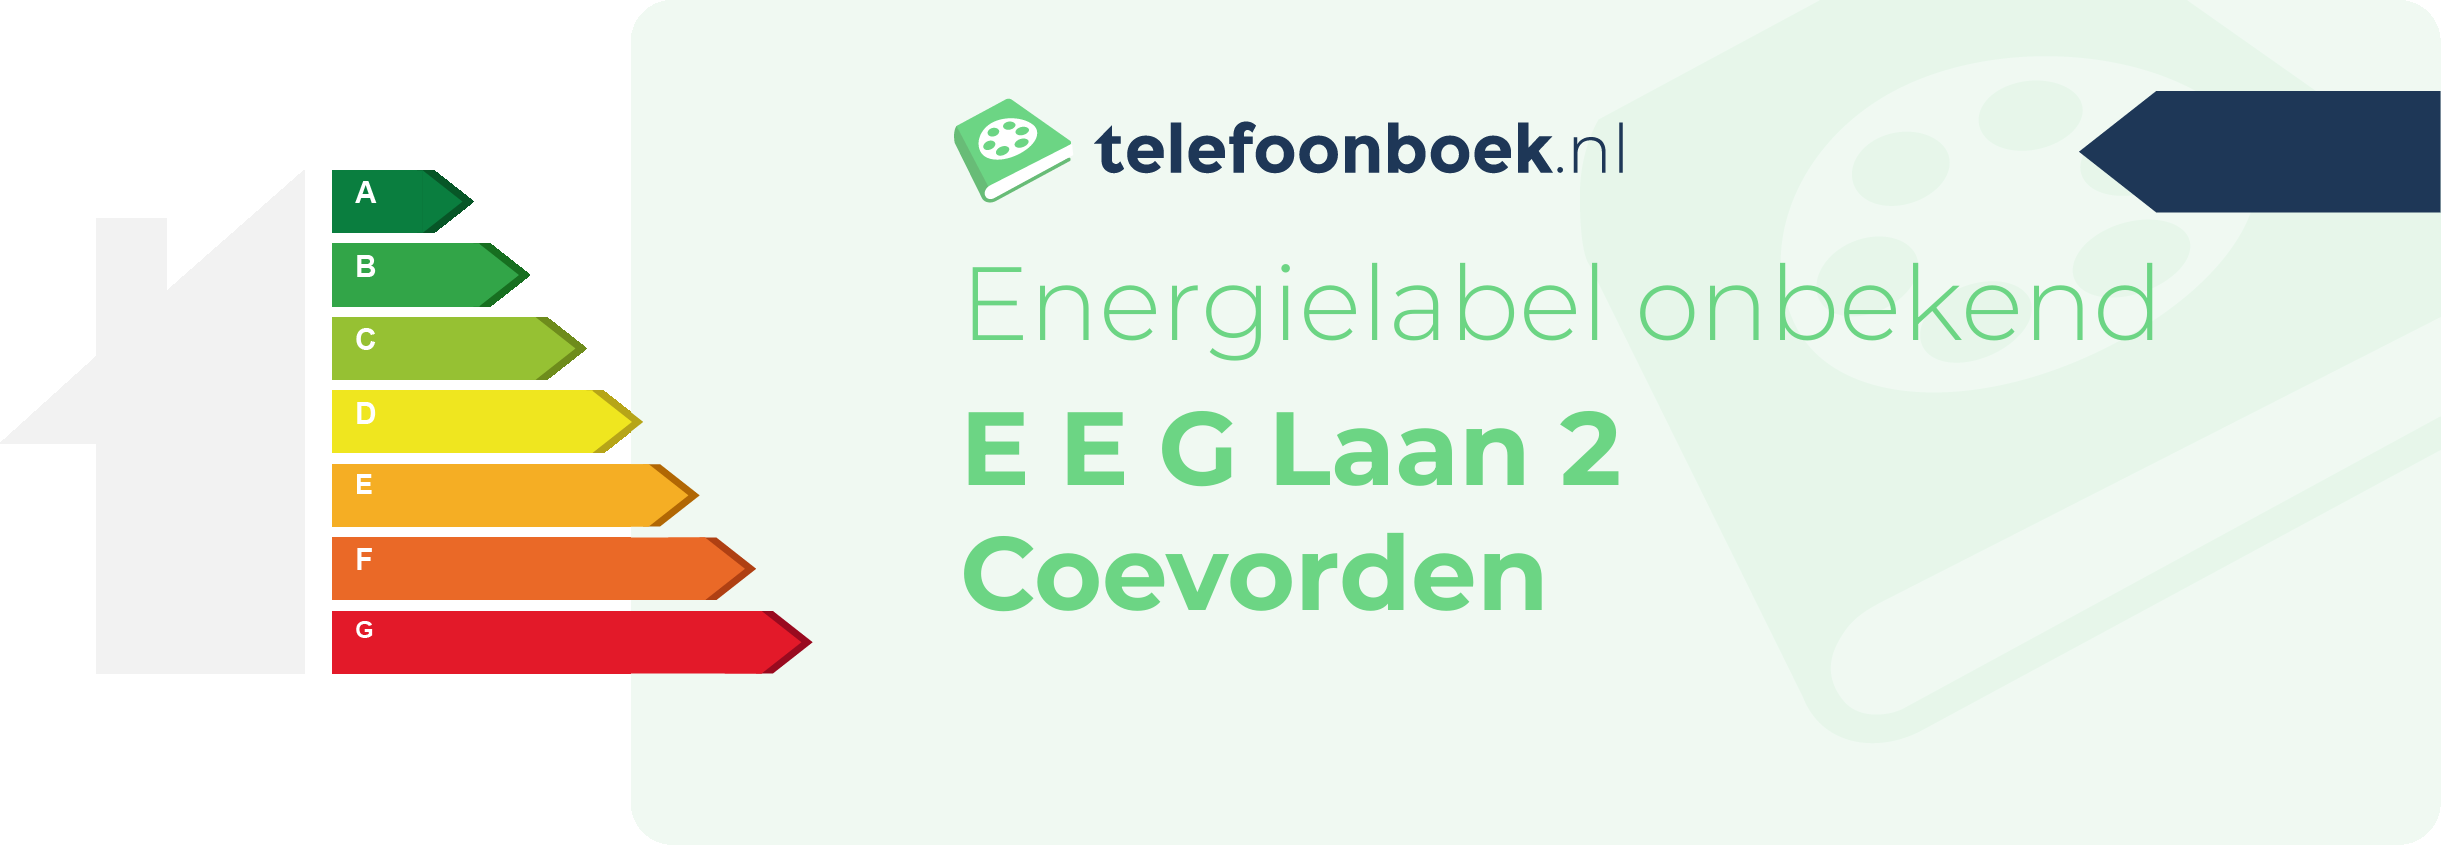 Energielabel E E G Laan 2 Coevorden